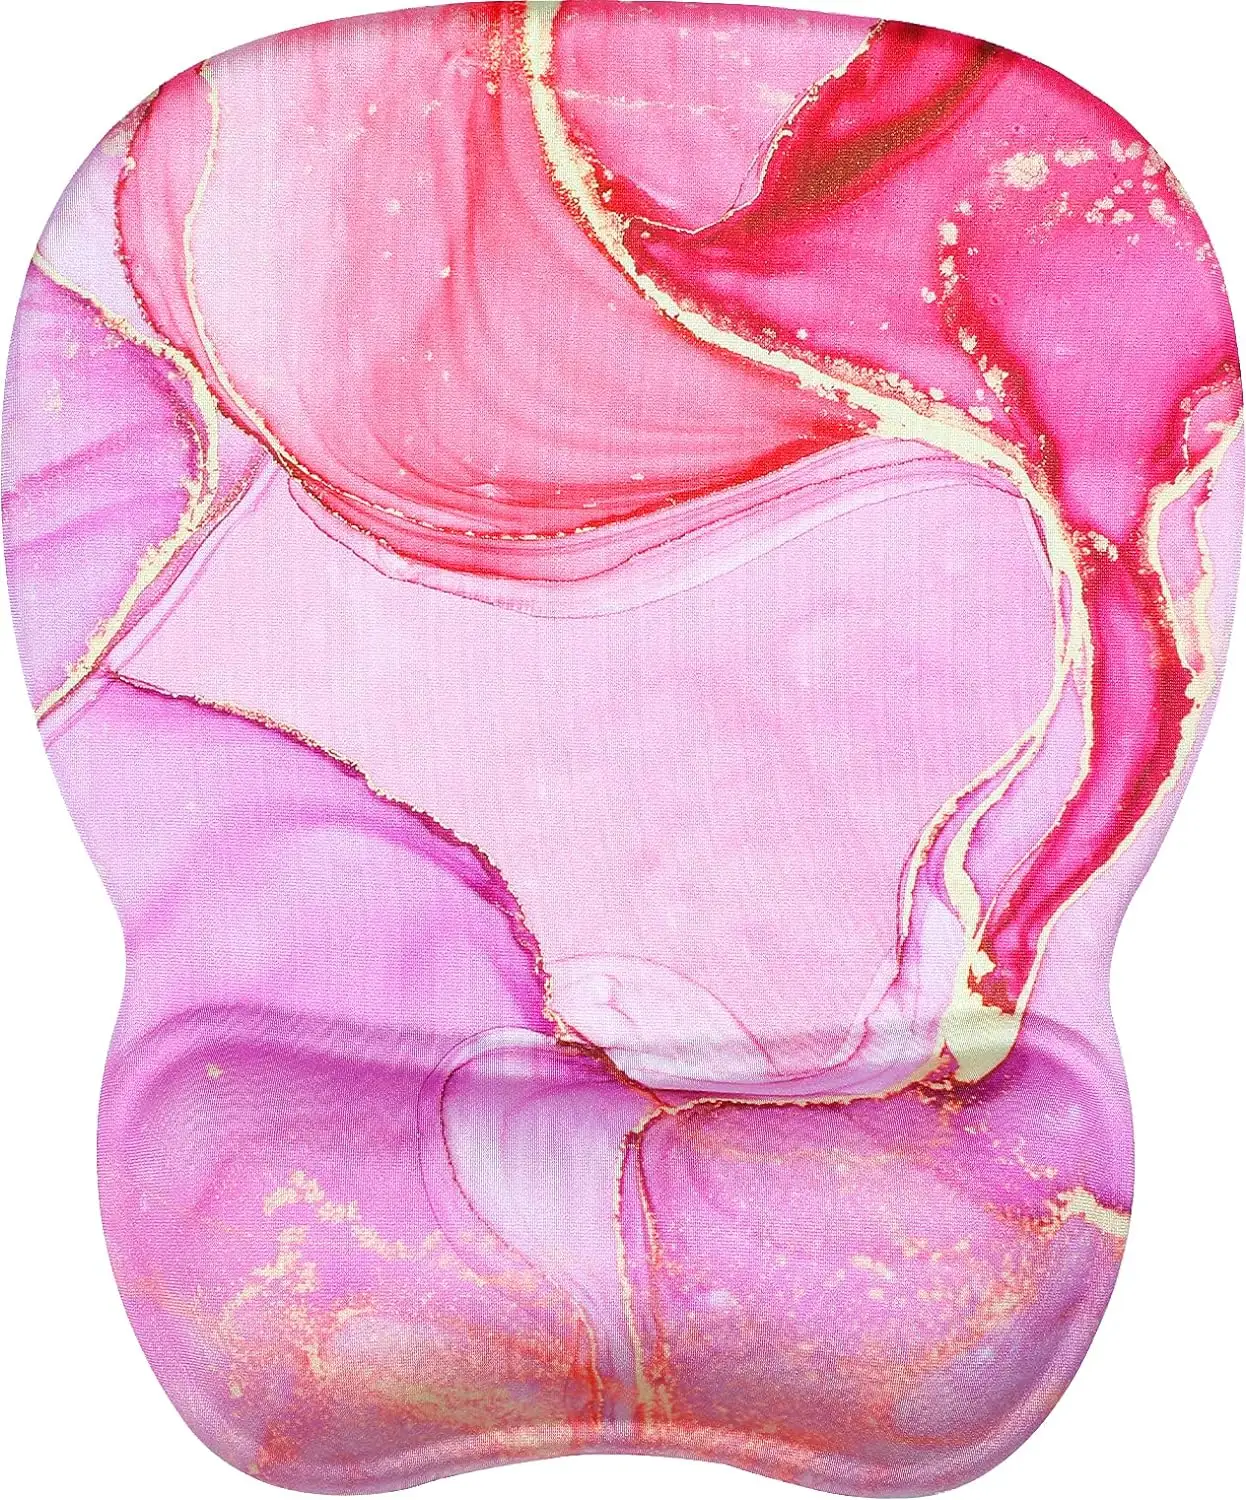 गुलाबी बैंगनी एर्गोनोमिक माउस पैड के साथ गुलाबी बैंगनी एर्गोनोमिक माउस पैड एनीमे 3 डी प्रिंटिंग पैड मूकडाउन